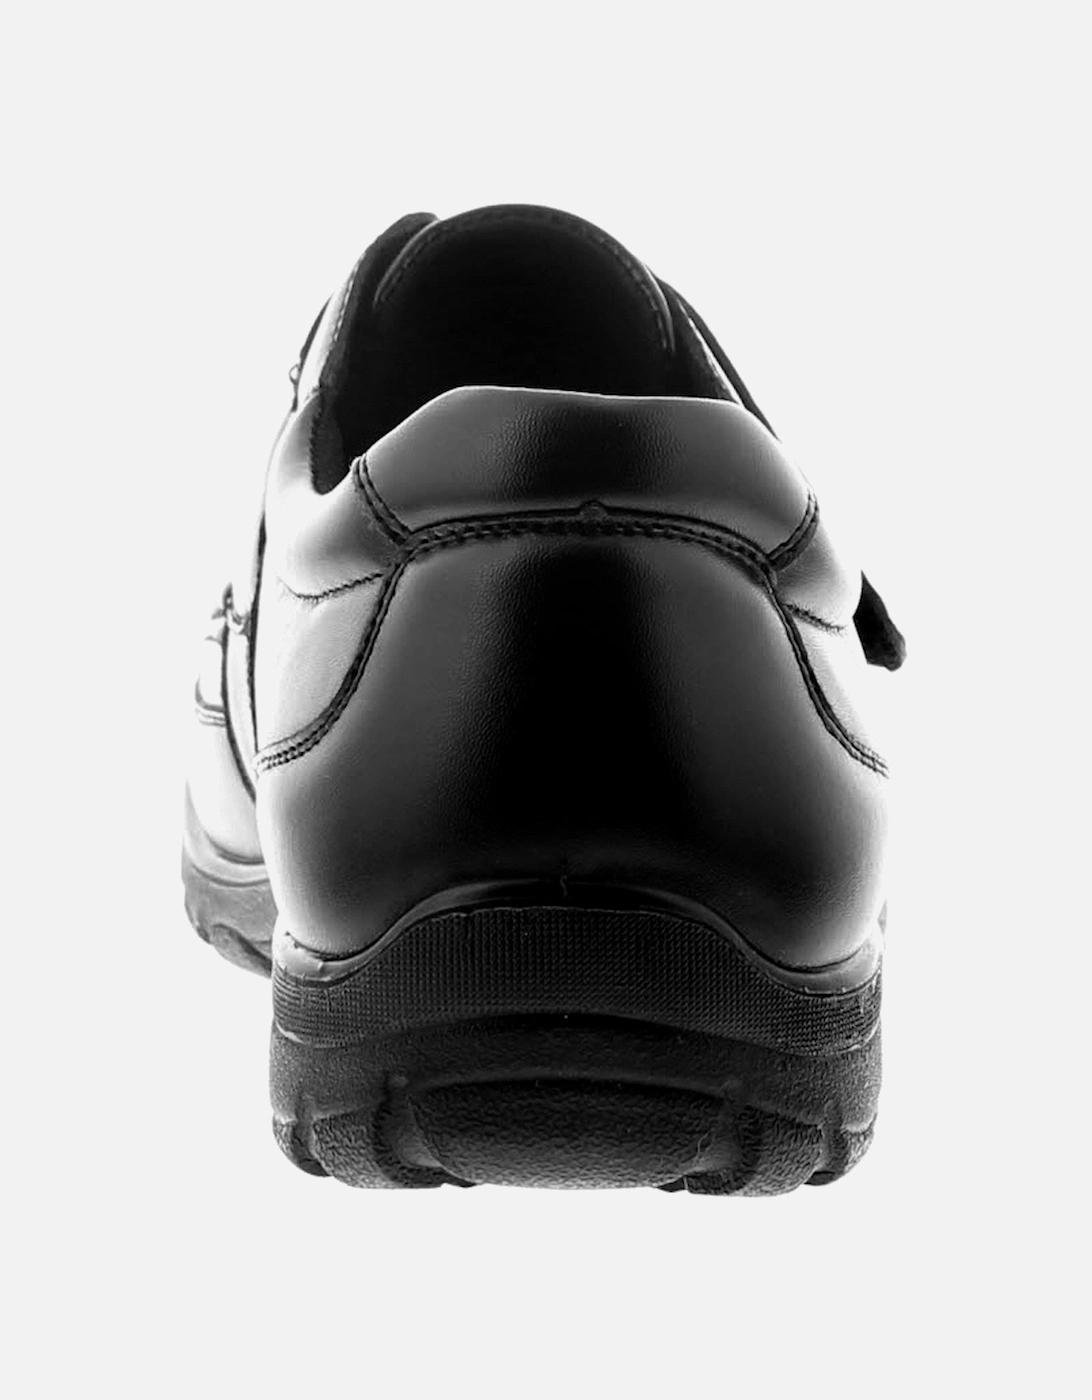 Mens Smart Shoes Rocket V Touch Fastening black UK Size